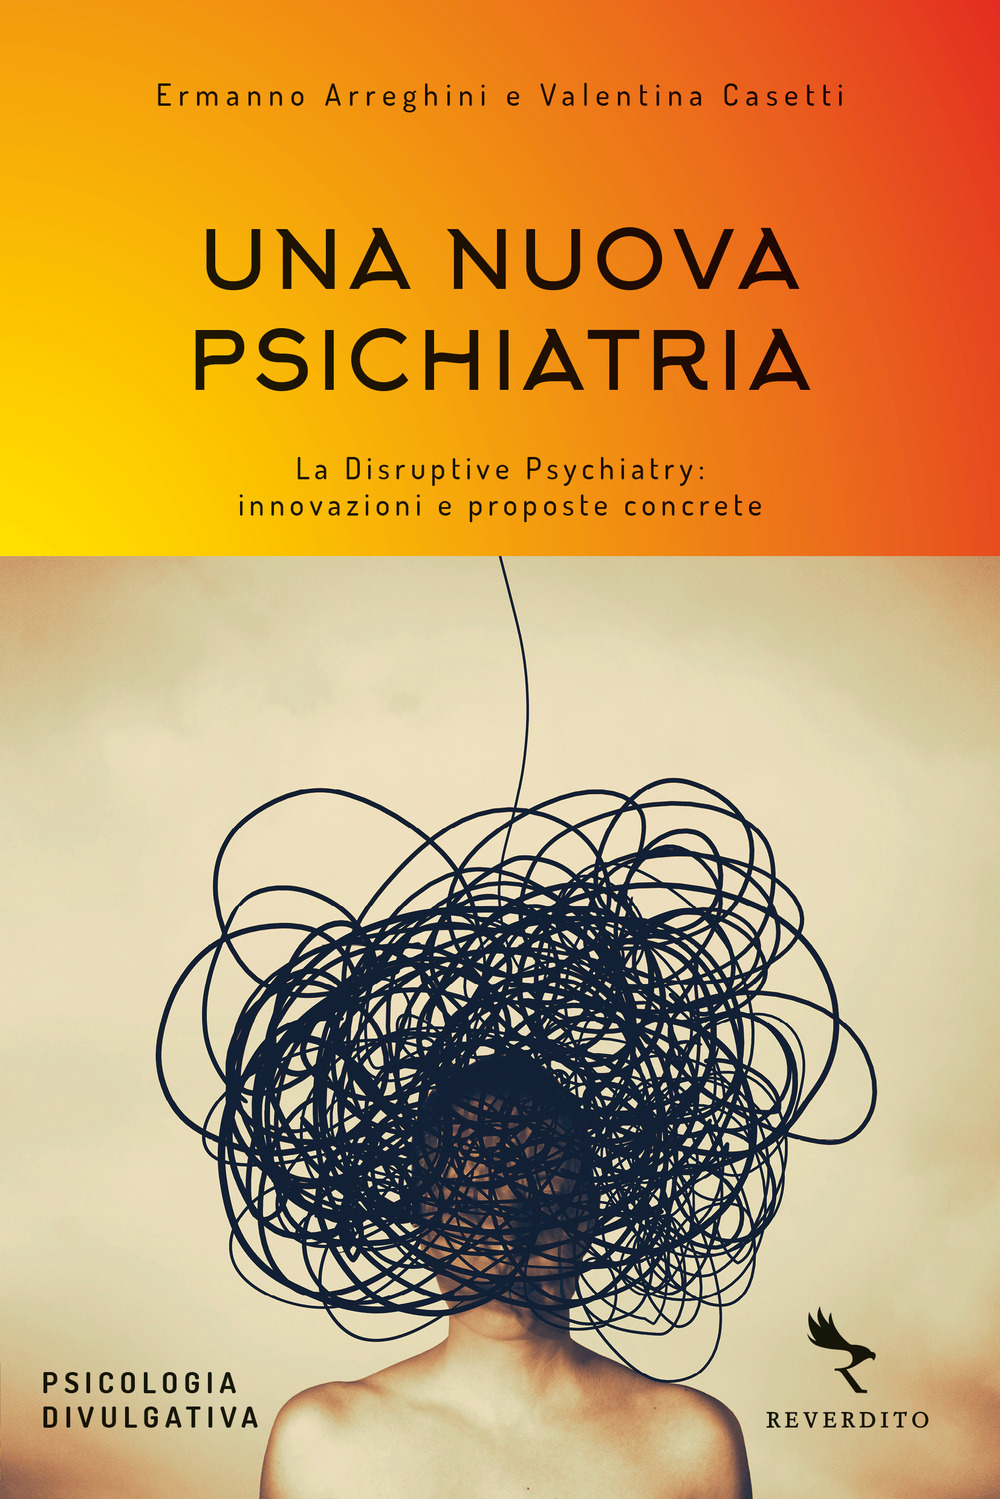 Una nuova psichiatria. La disruptive psychiatry: innovazioni e proposte concrete